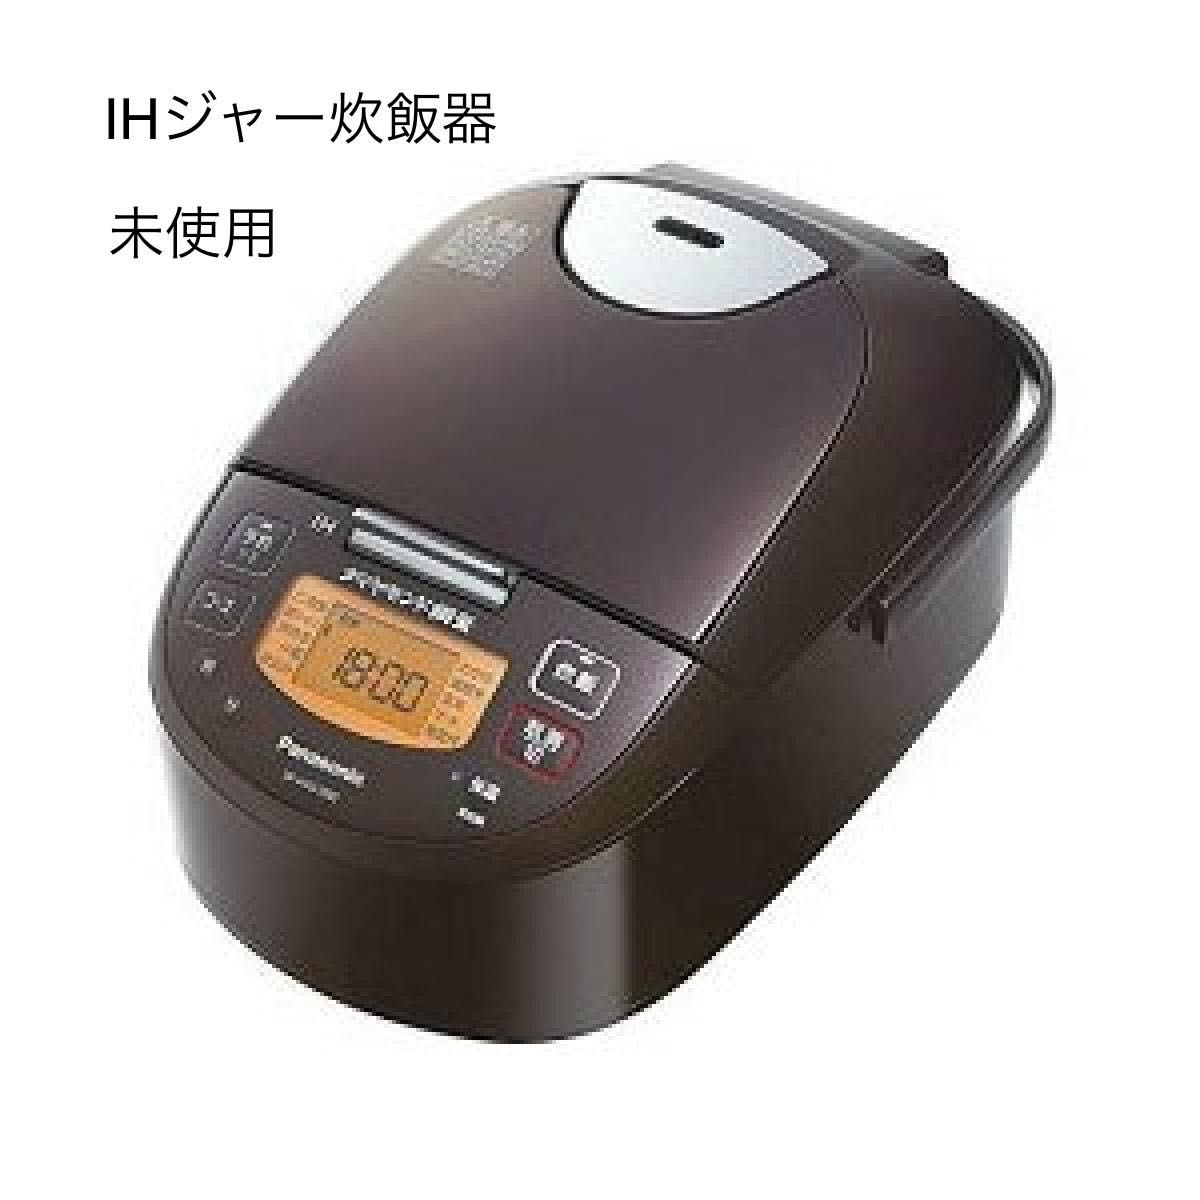 代引き人気 Panasonic Wおどり炊き 圧力IH炊飯ジャー 炊飯器 IHジャー